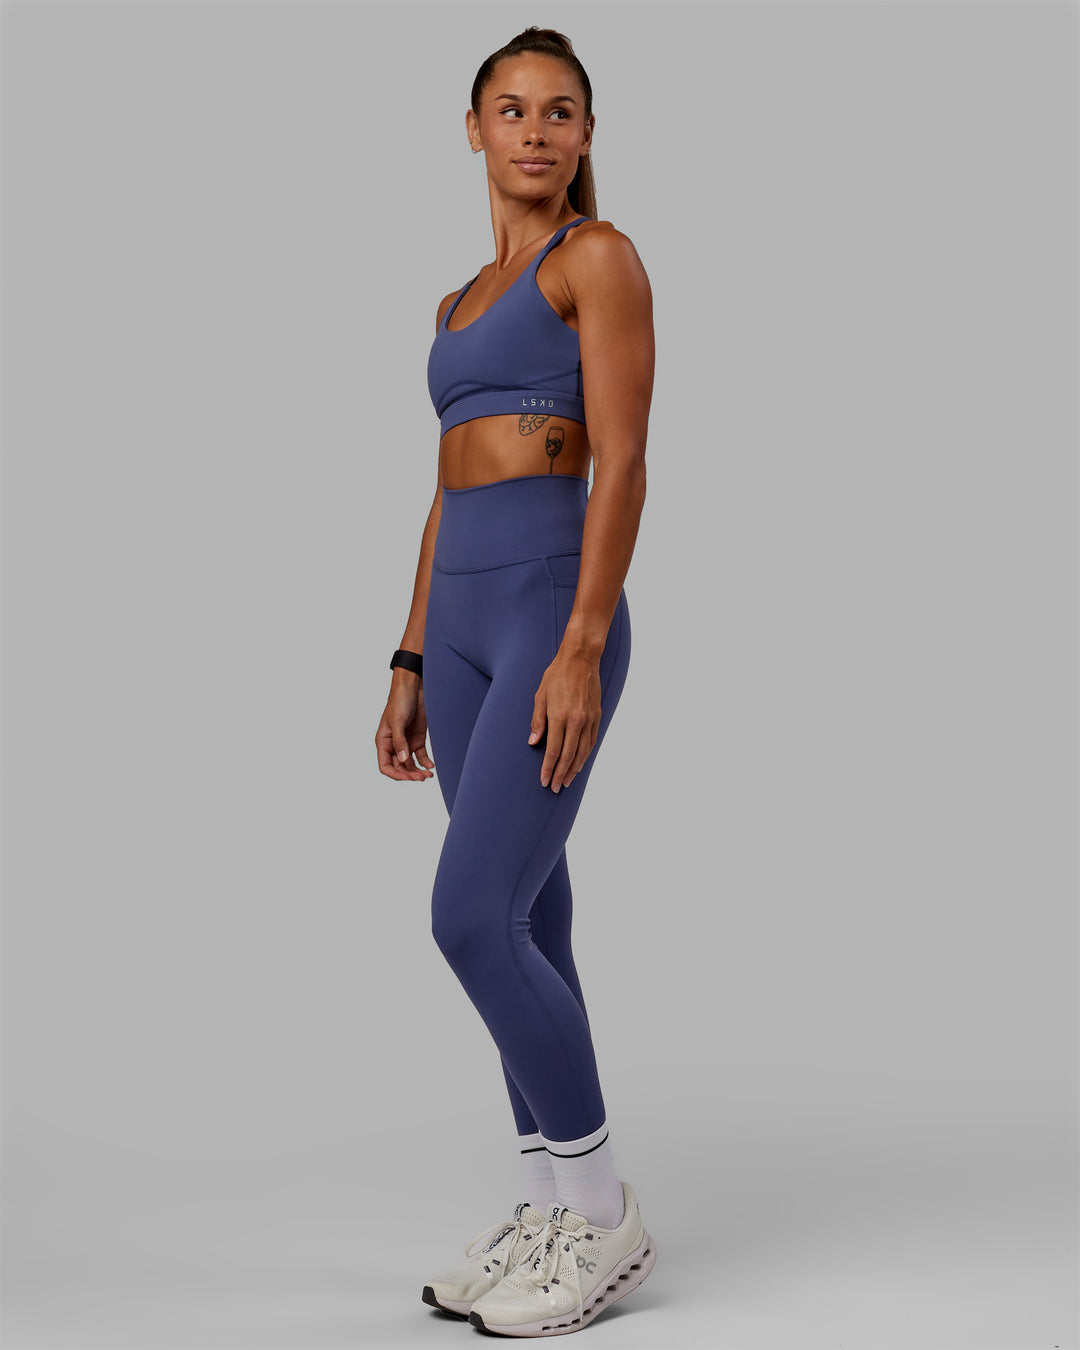 Woman wearing Rapid Sports Bra - Future Dusk